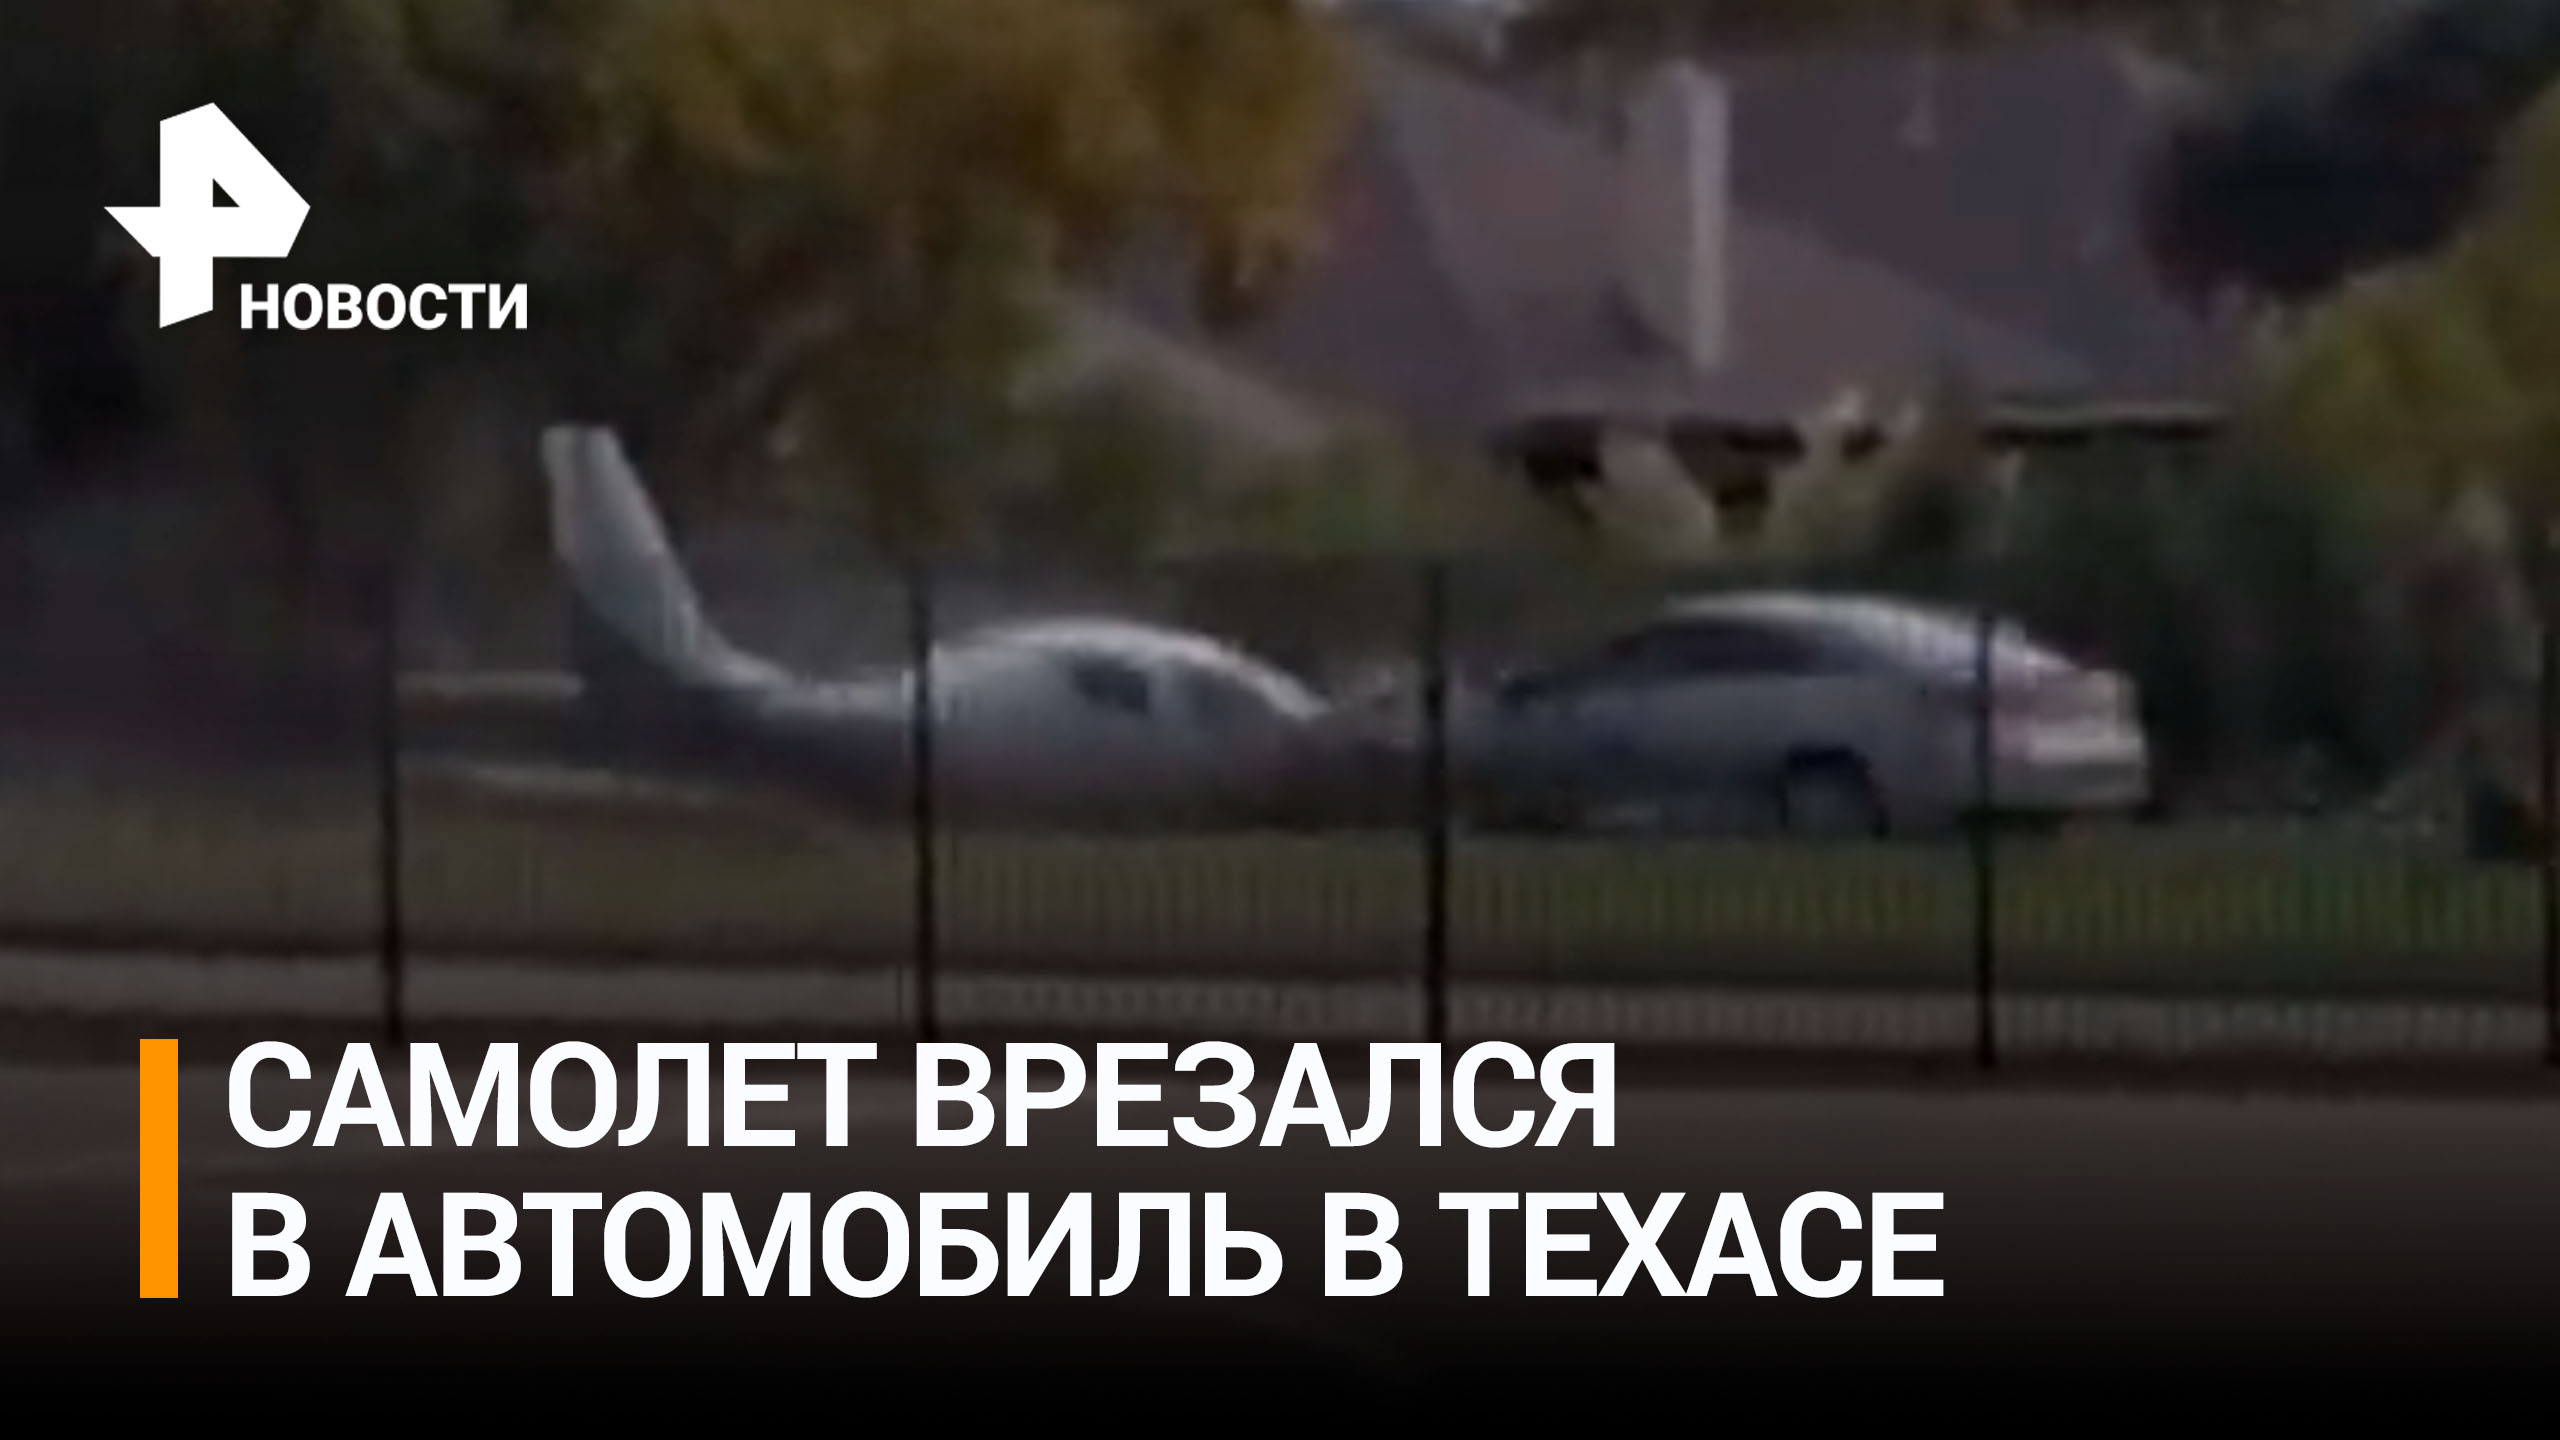 Самолет и автомобиль протаранили друг друга, не поделив дорогу / РЕН Новости